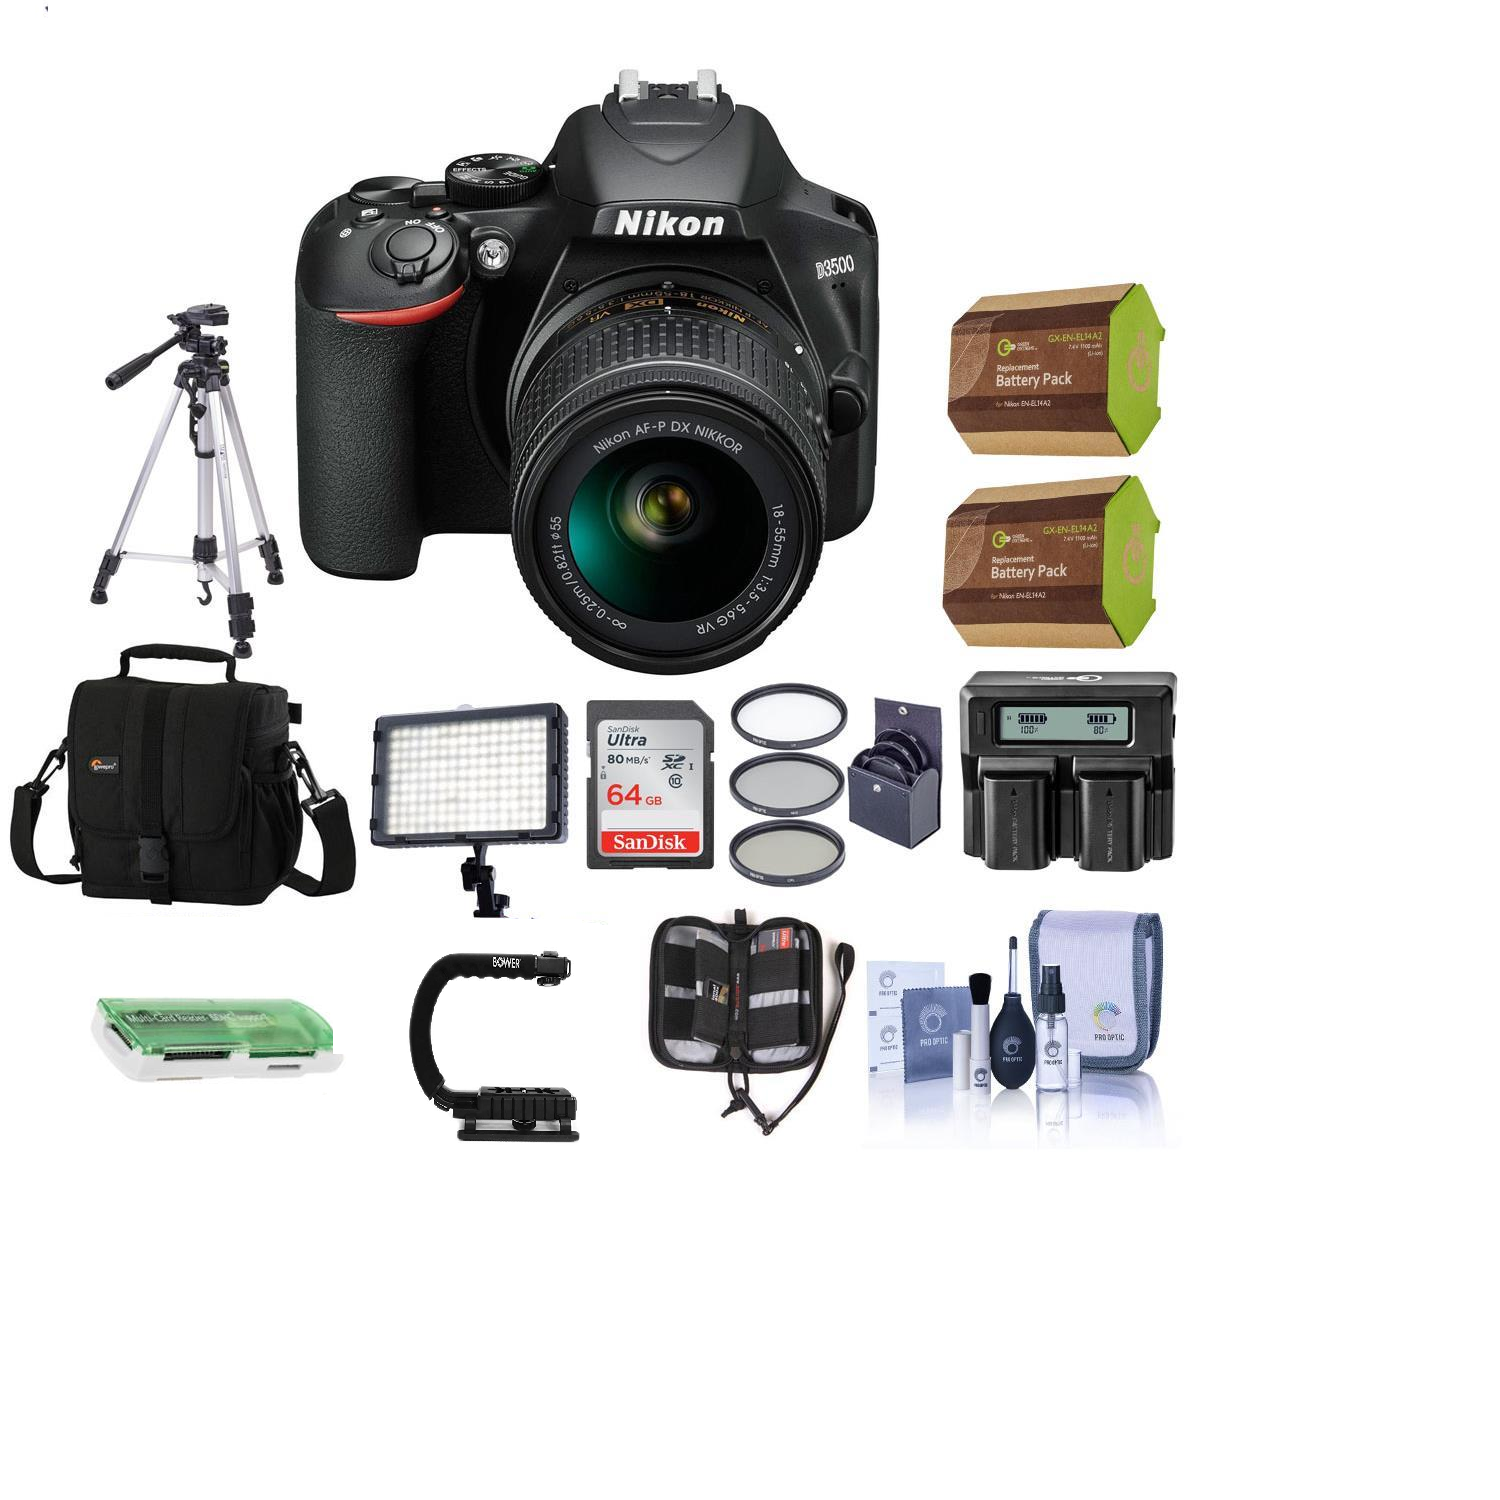 Nikon D3500 DSLR Camera with 18-55mm Lens & 64GB Bundle - US Version w/ Seller Warranty